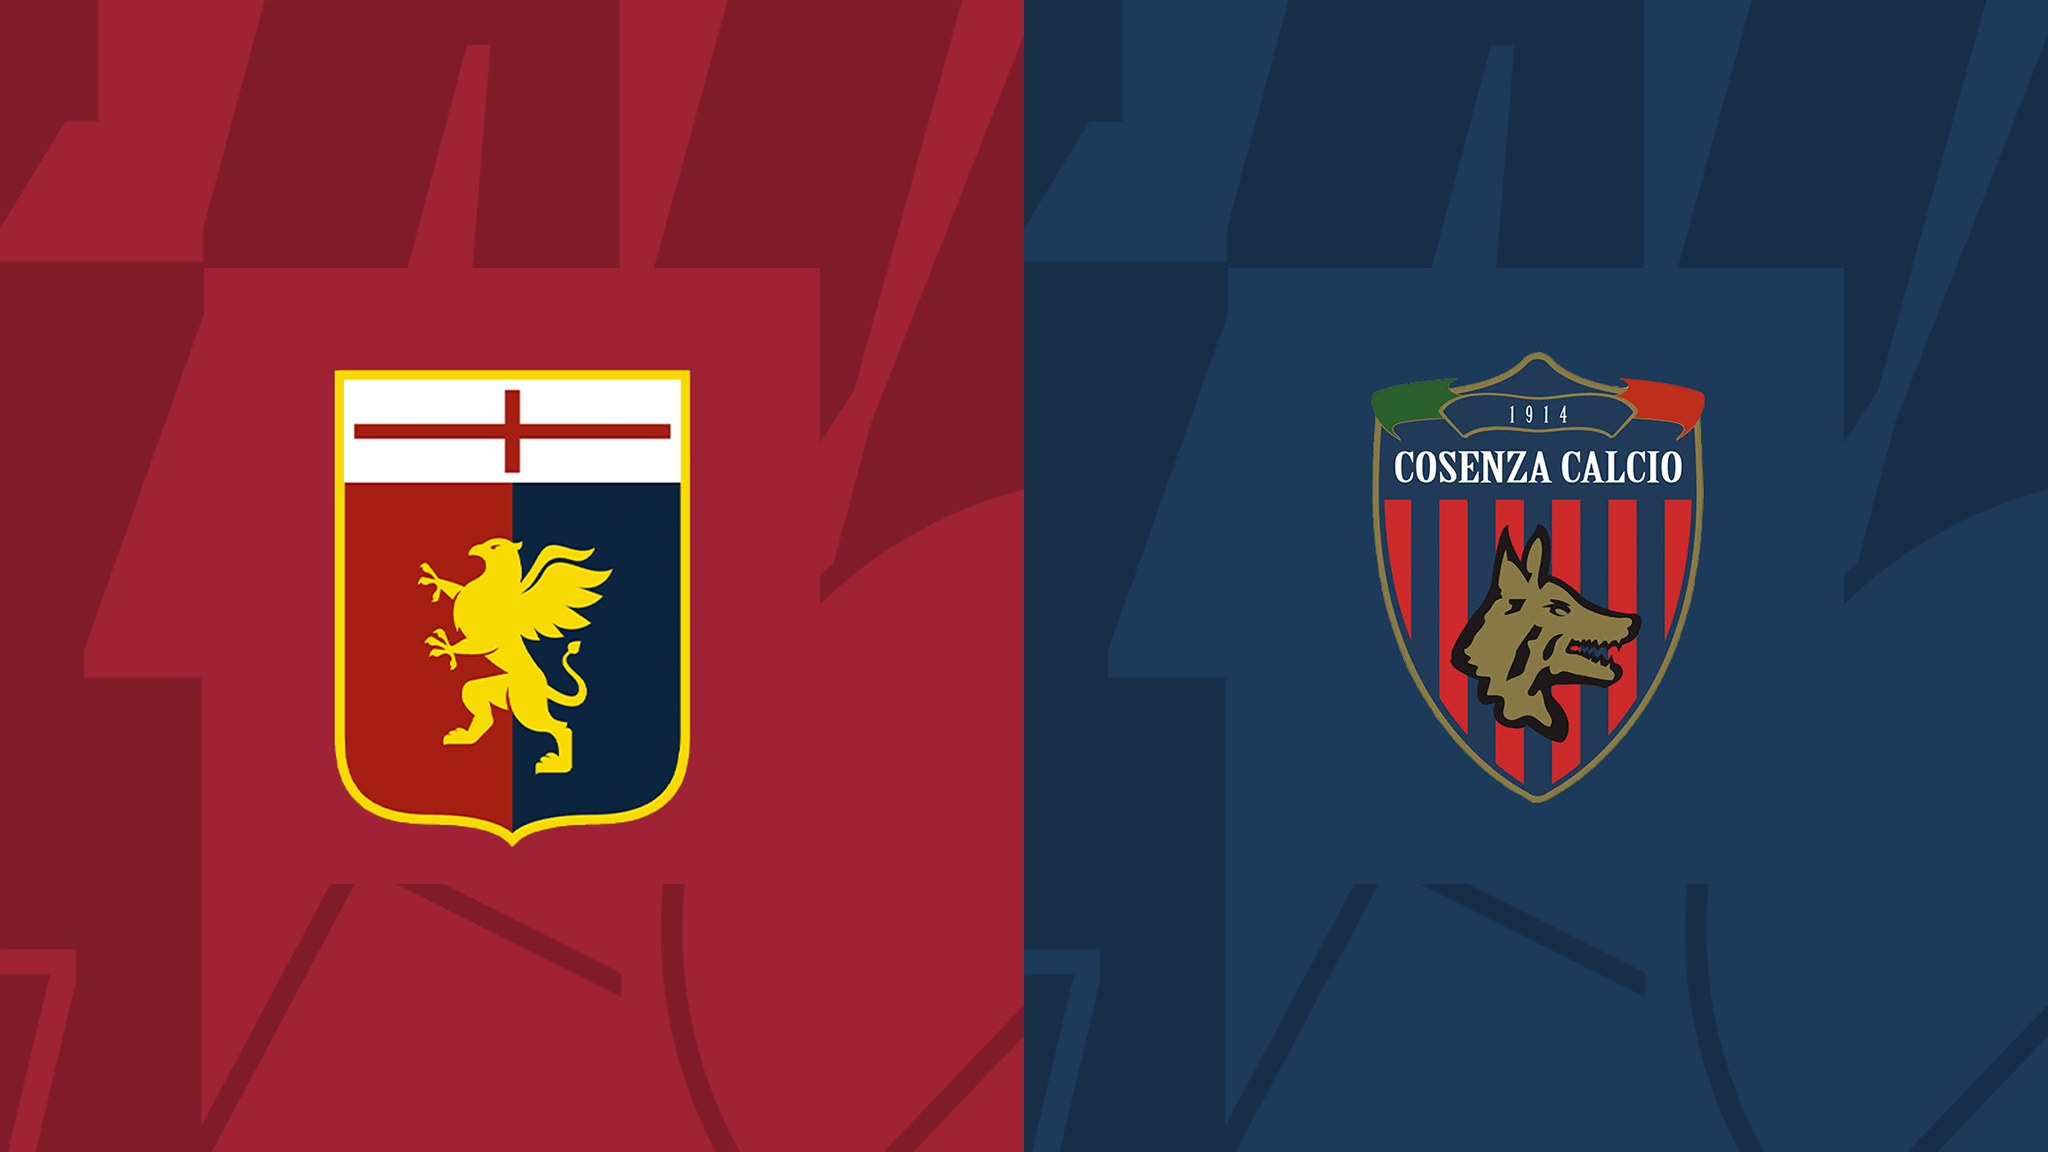 Génova – Cosenza 4-0 partido final en vivo